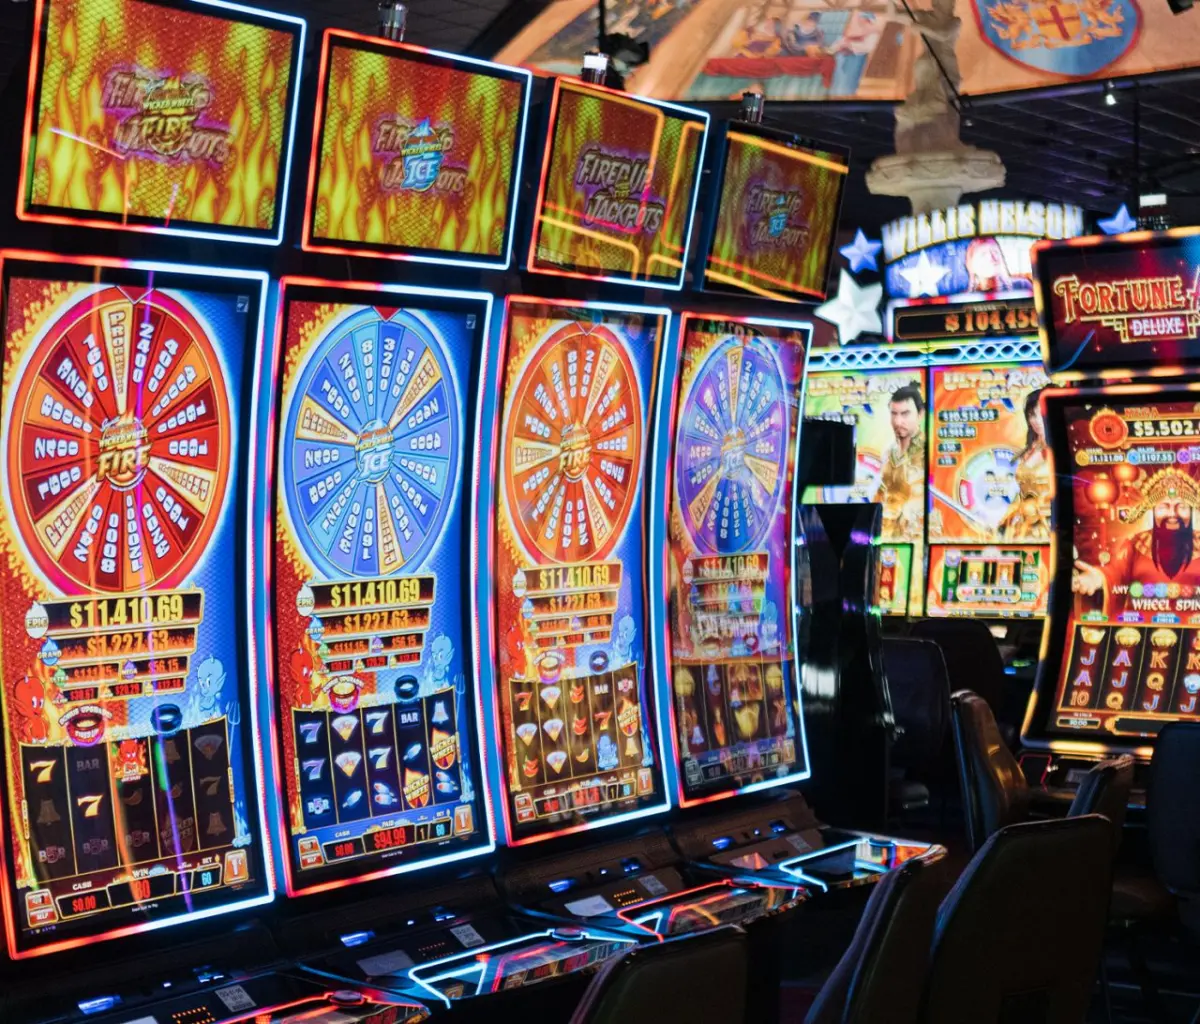 Slot machines at WinStar World Casino and Resort